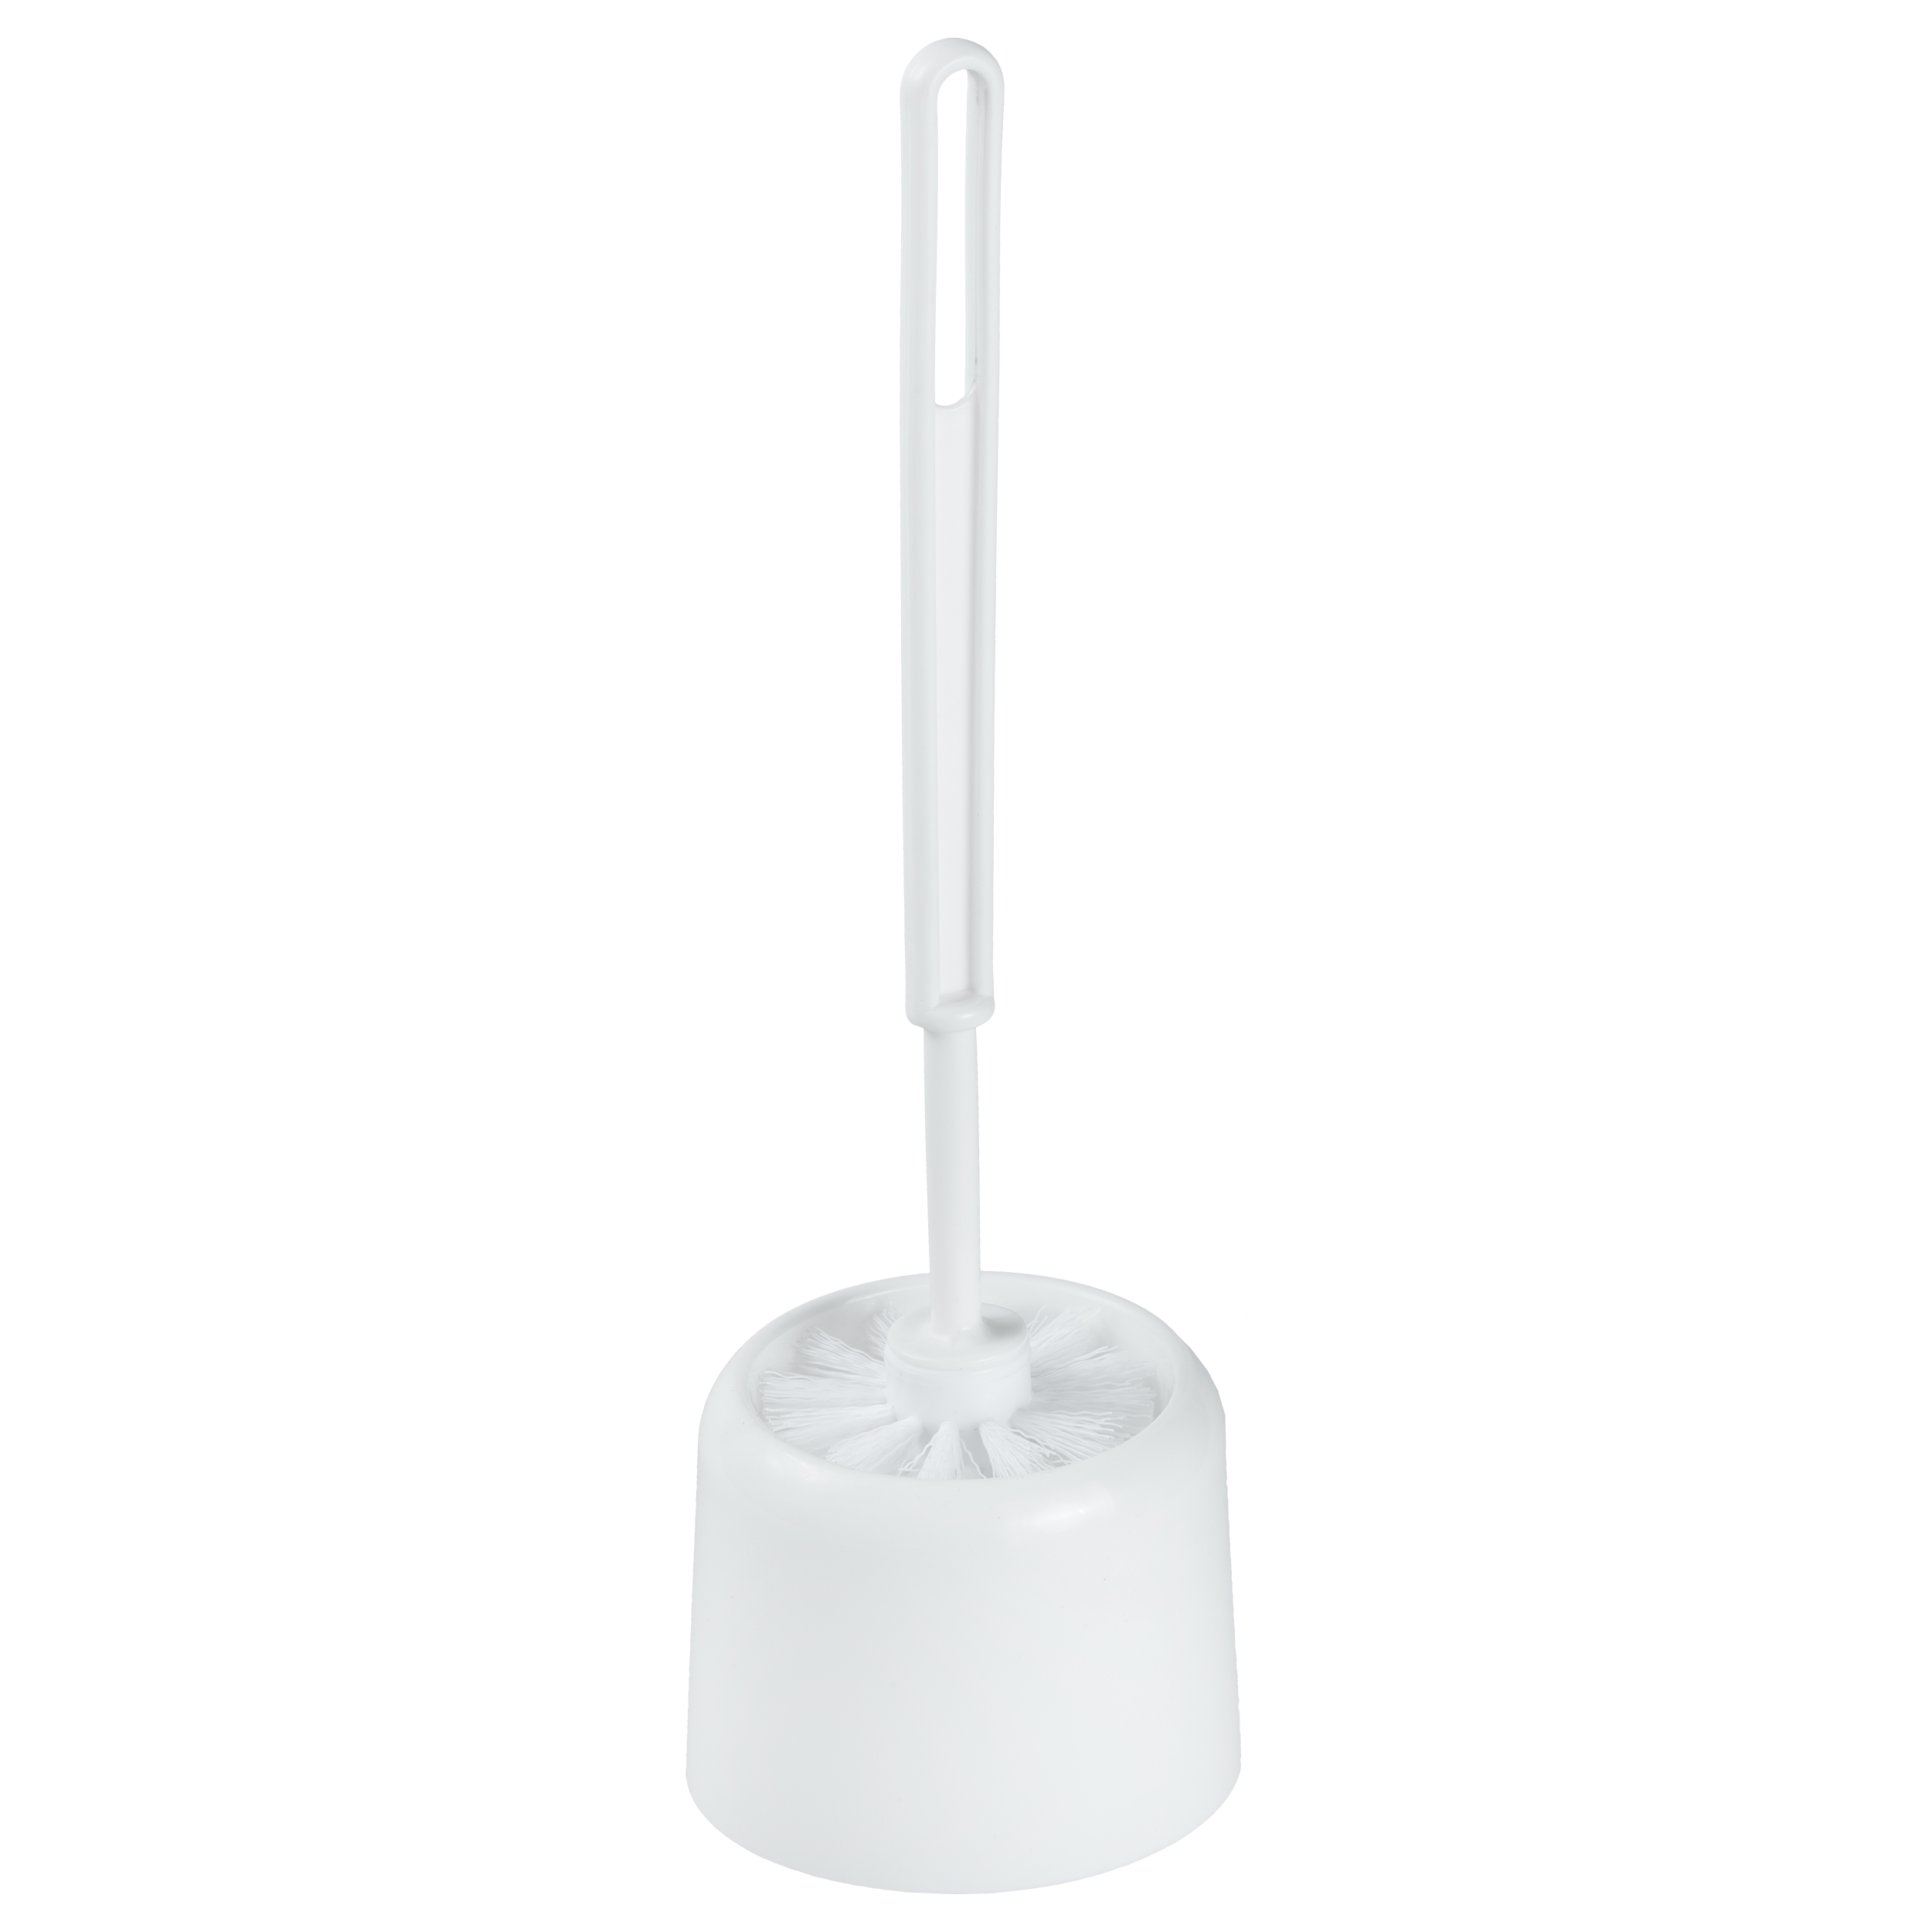 Escobillero de Baño, Escobilla de Plastico con Soporte Higienico, D14x40cm  (Blanco)